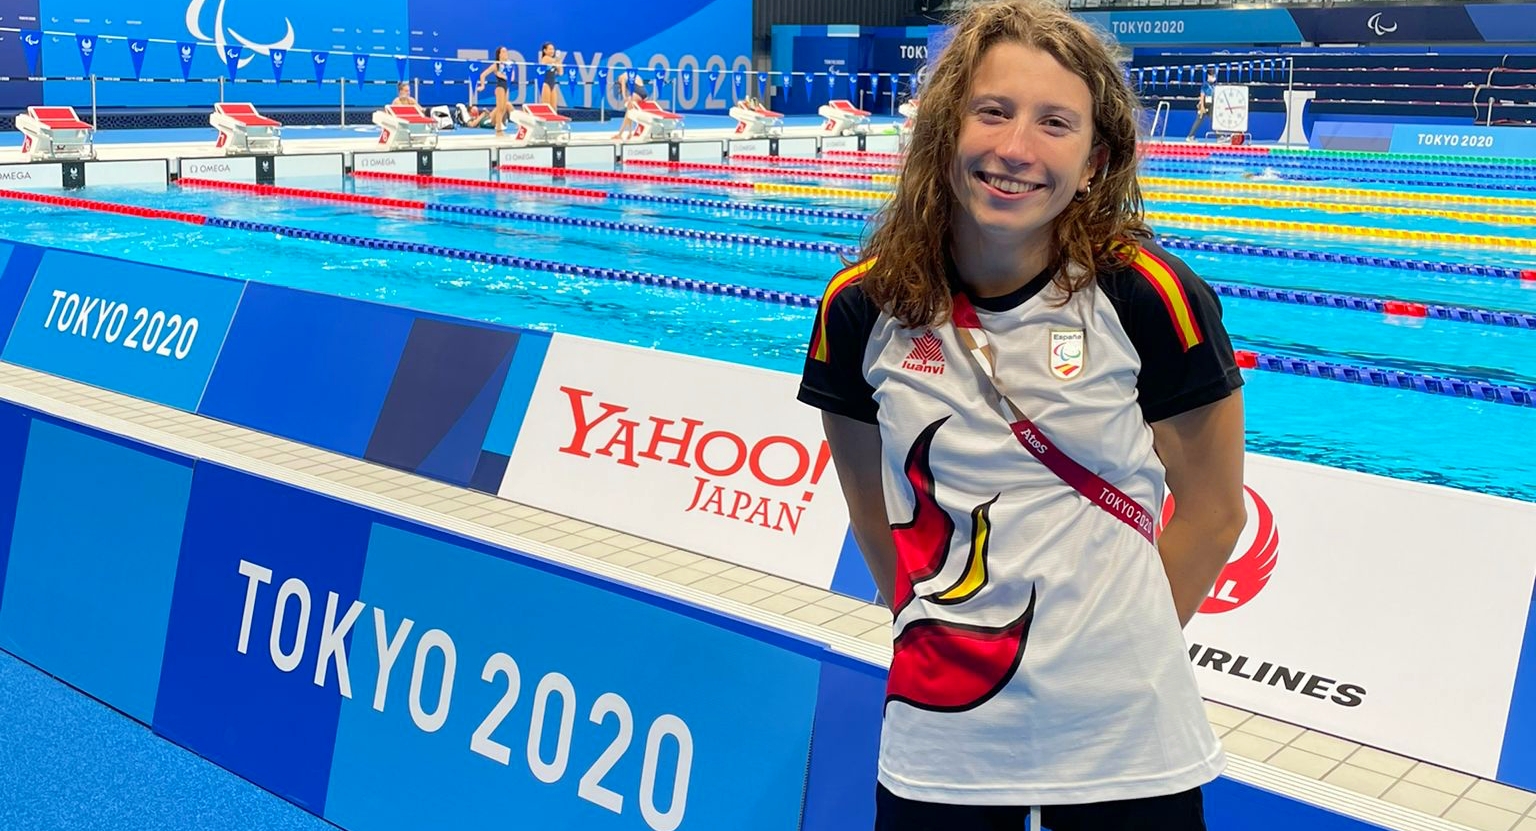 Nadia Zudaide, la nadadora de origen extremeño que competirá en los JJPP de Tokio